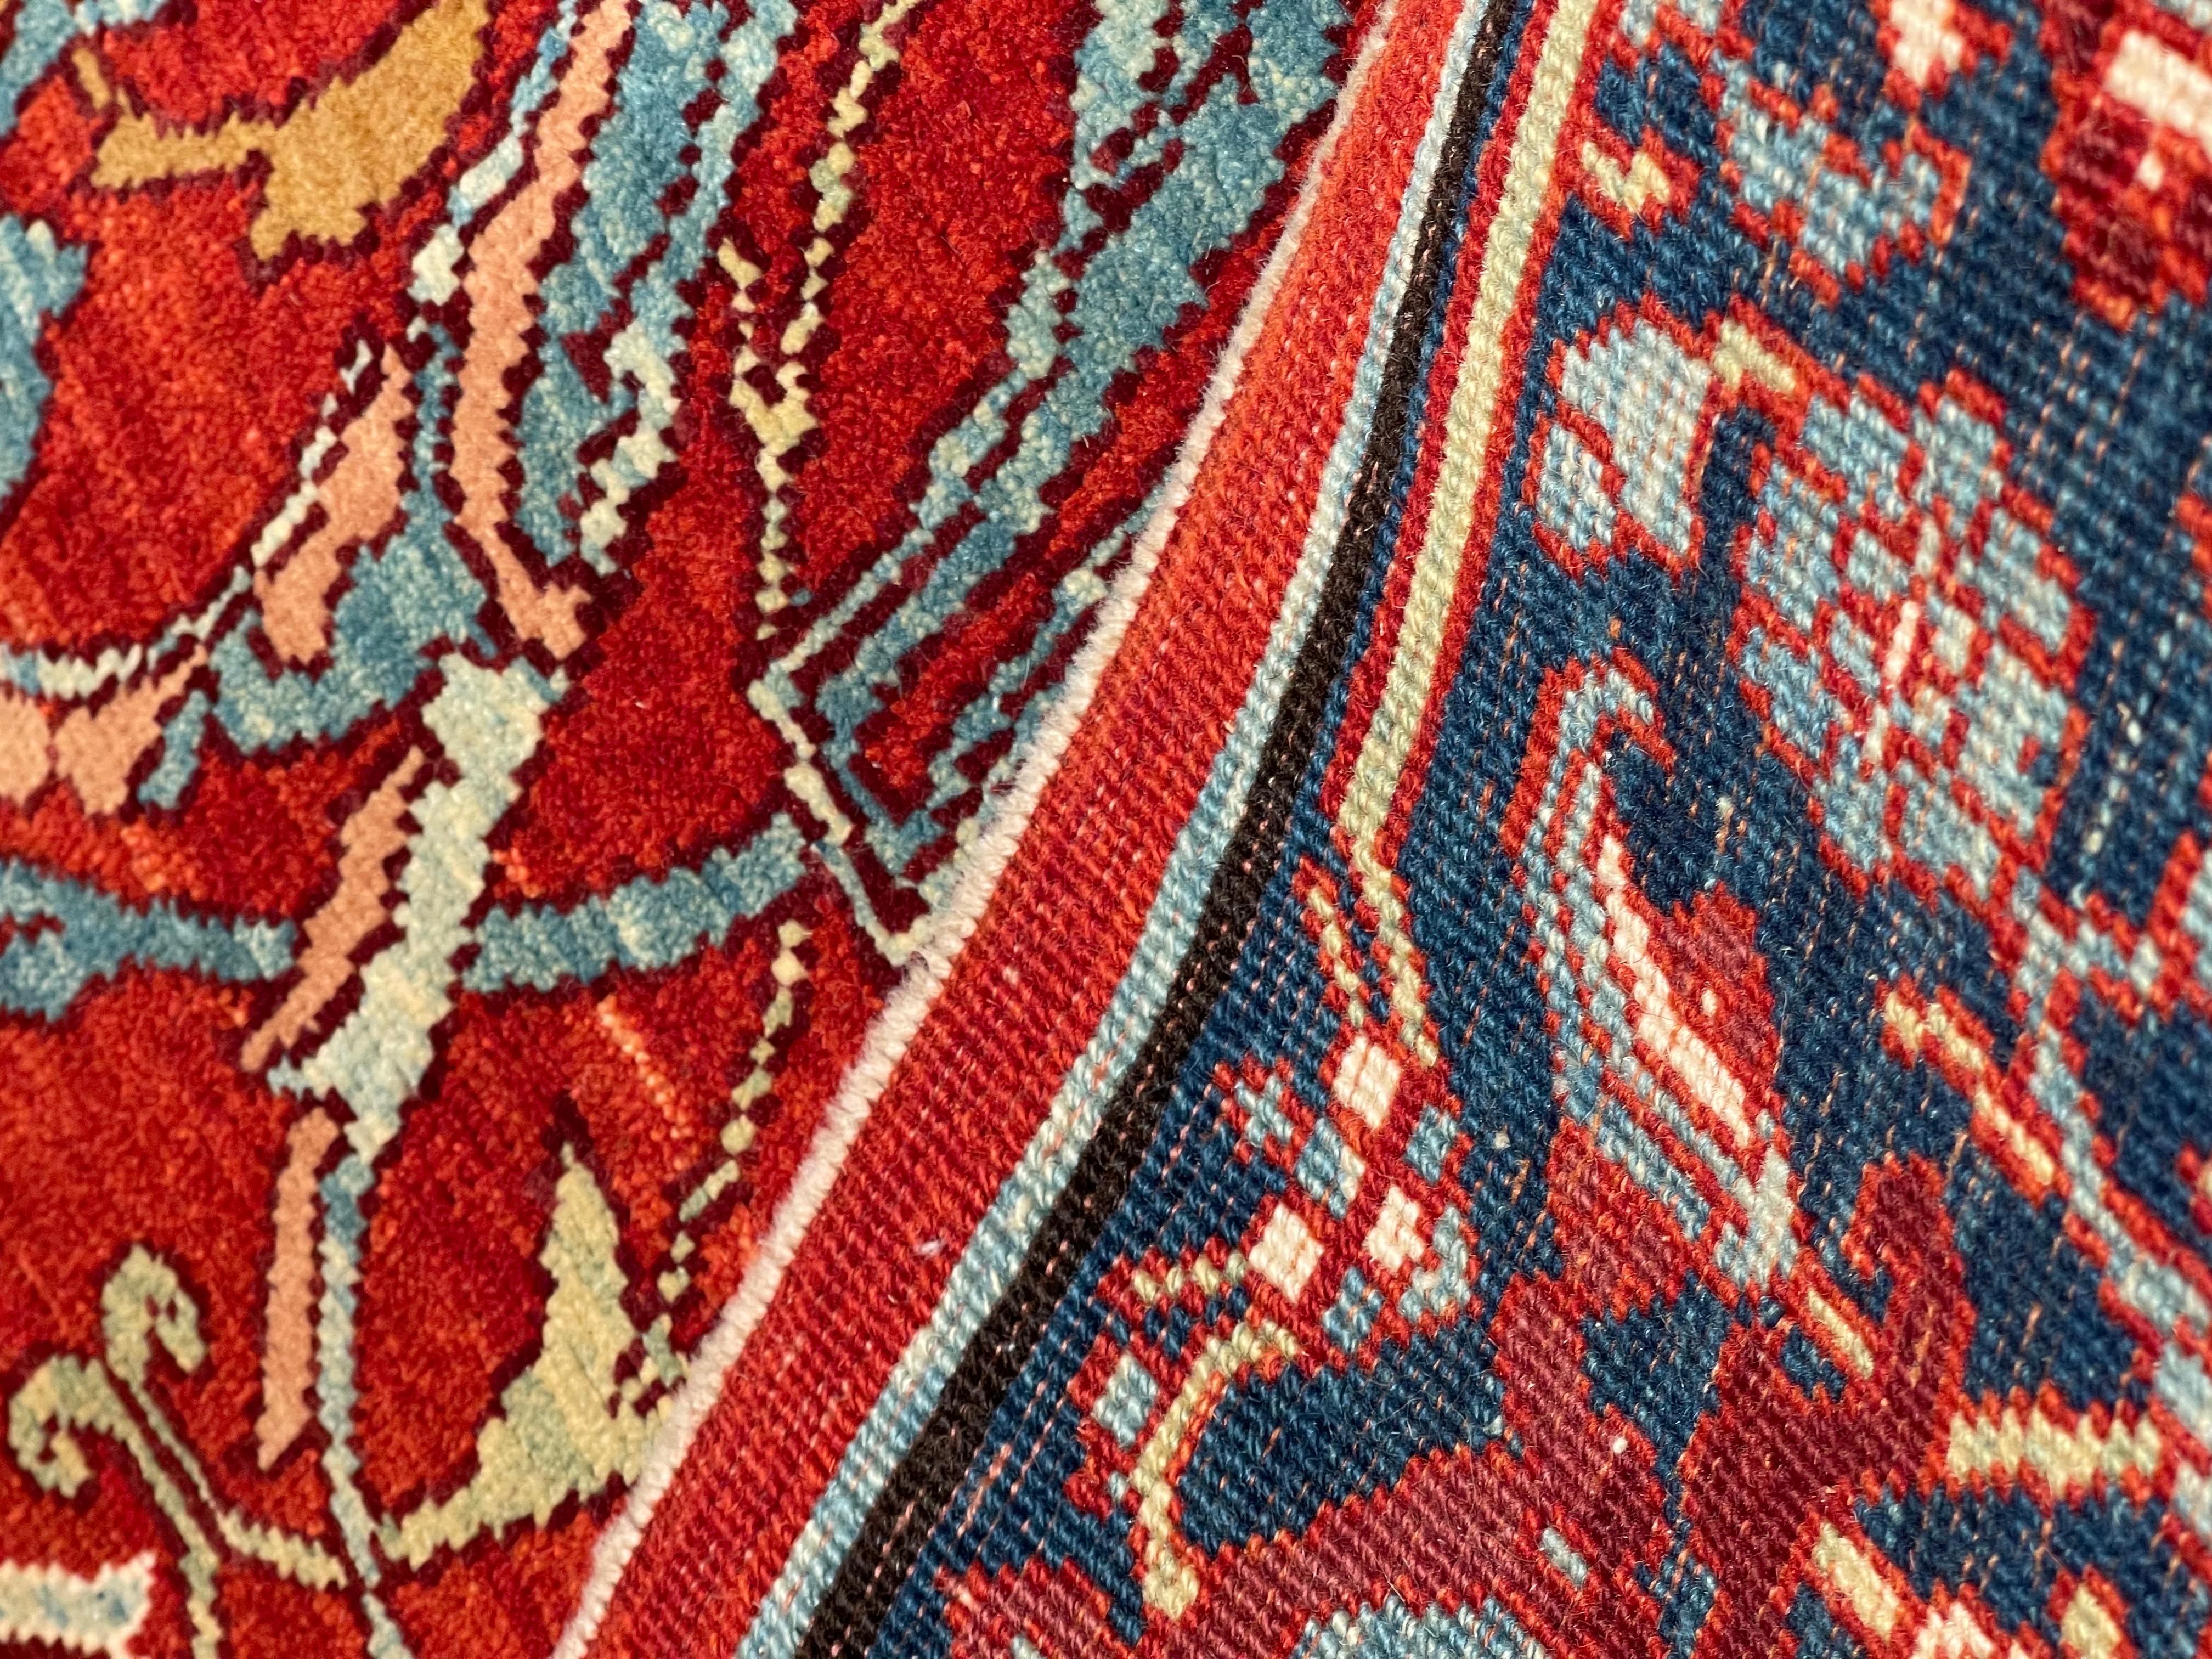 Wool Ararat Rugs Bidjar Sweeping Arabesques Rug Persian Revival Carpet Natural Dyed For Sale